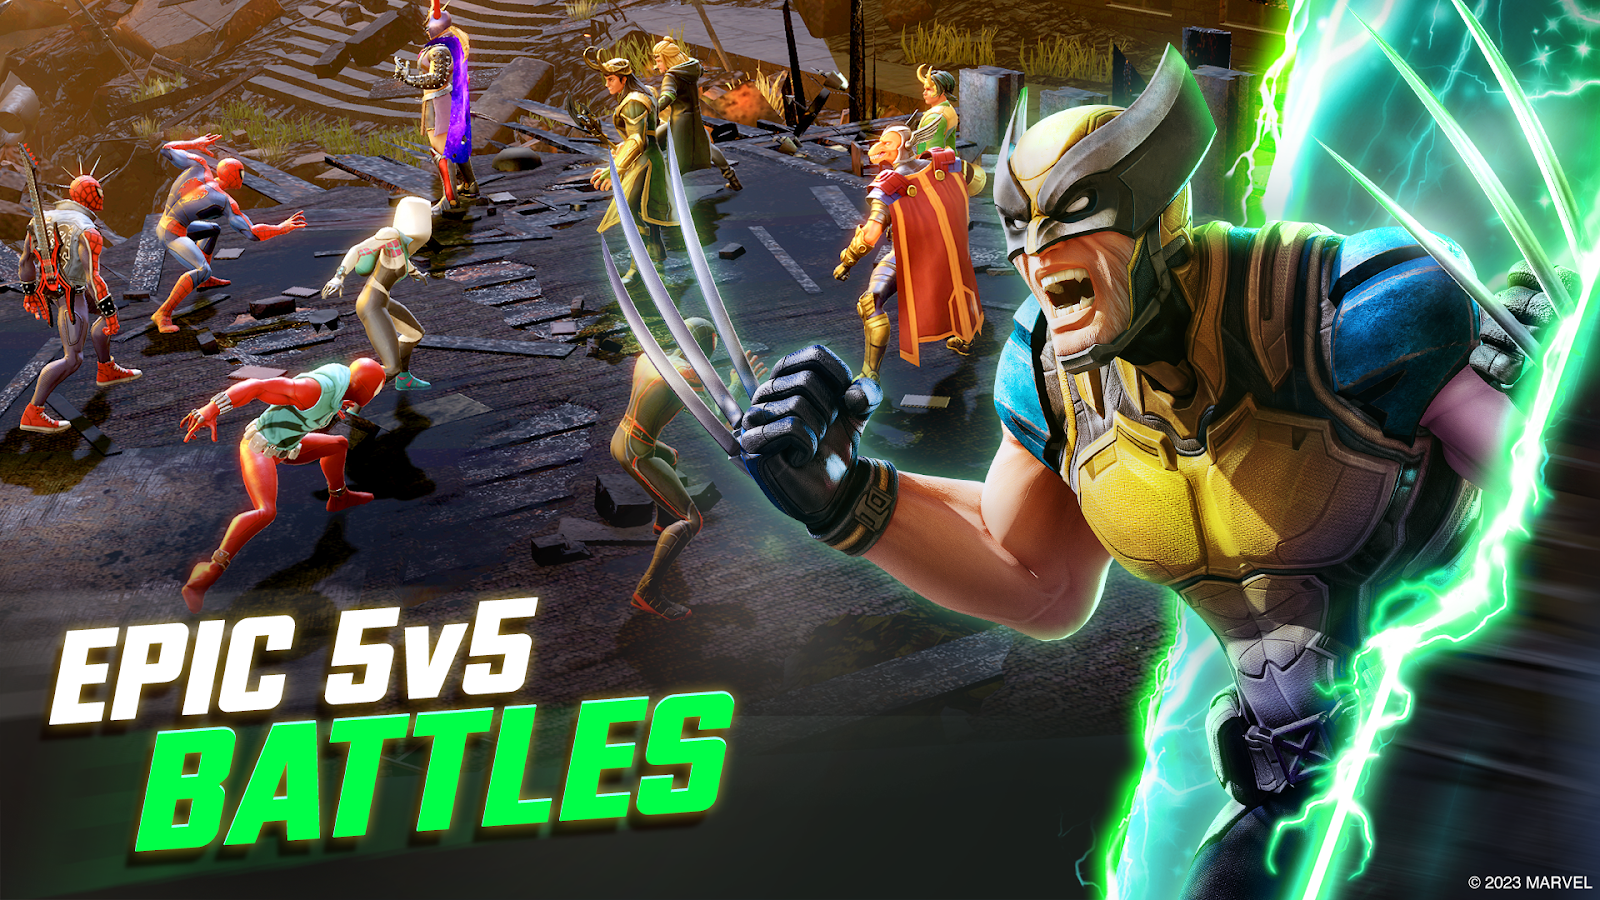 Play 5v5 battles